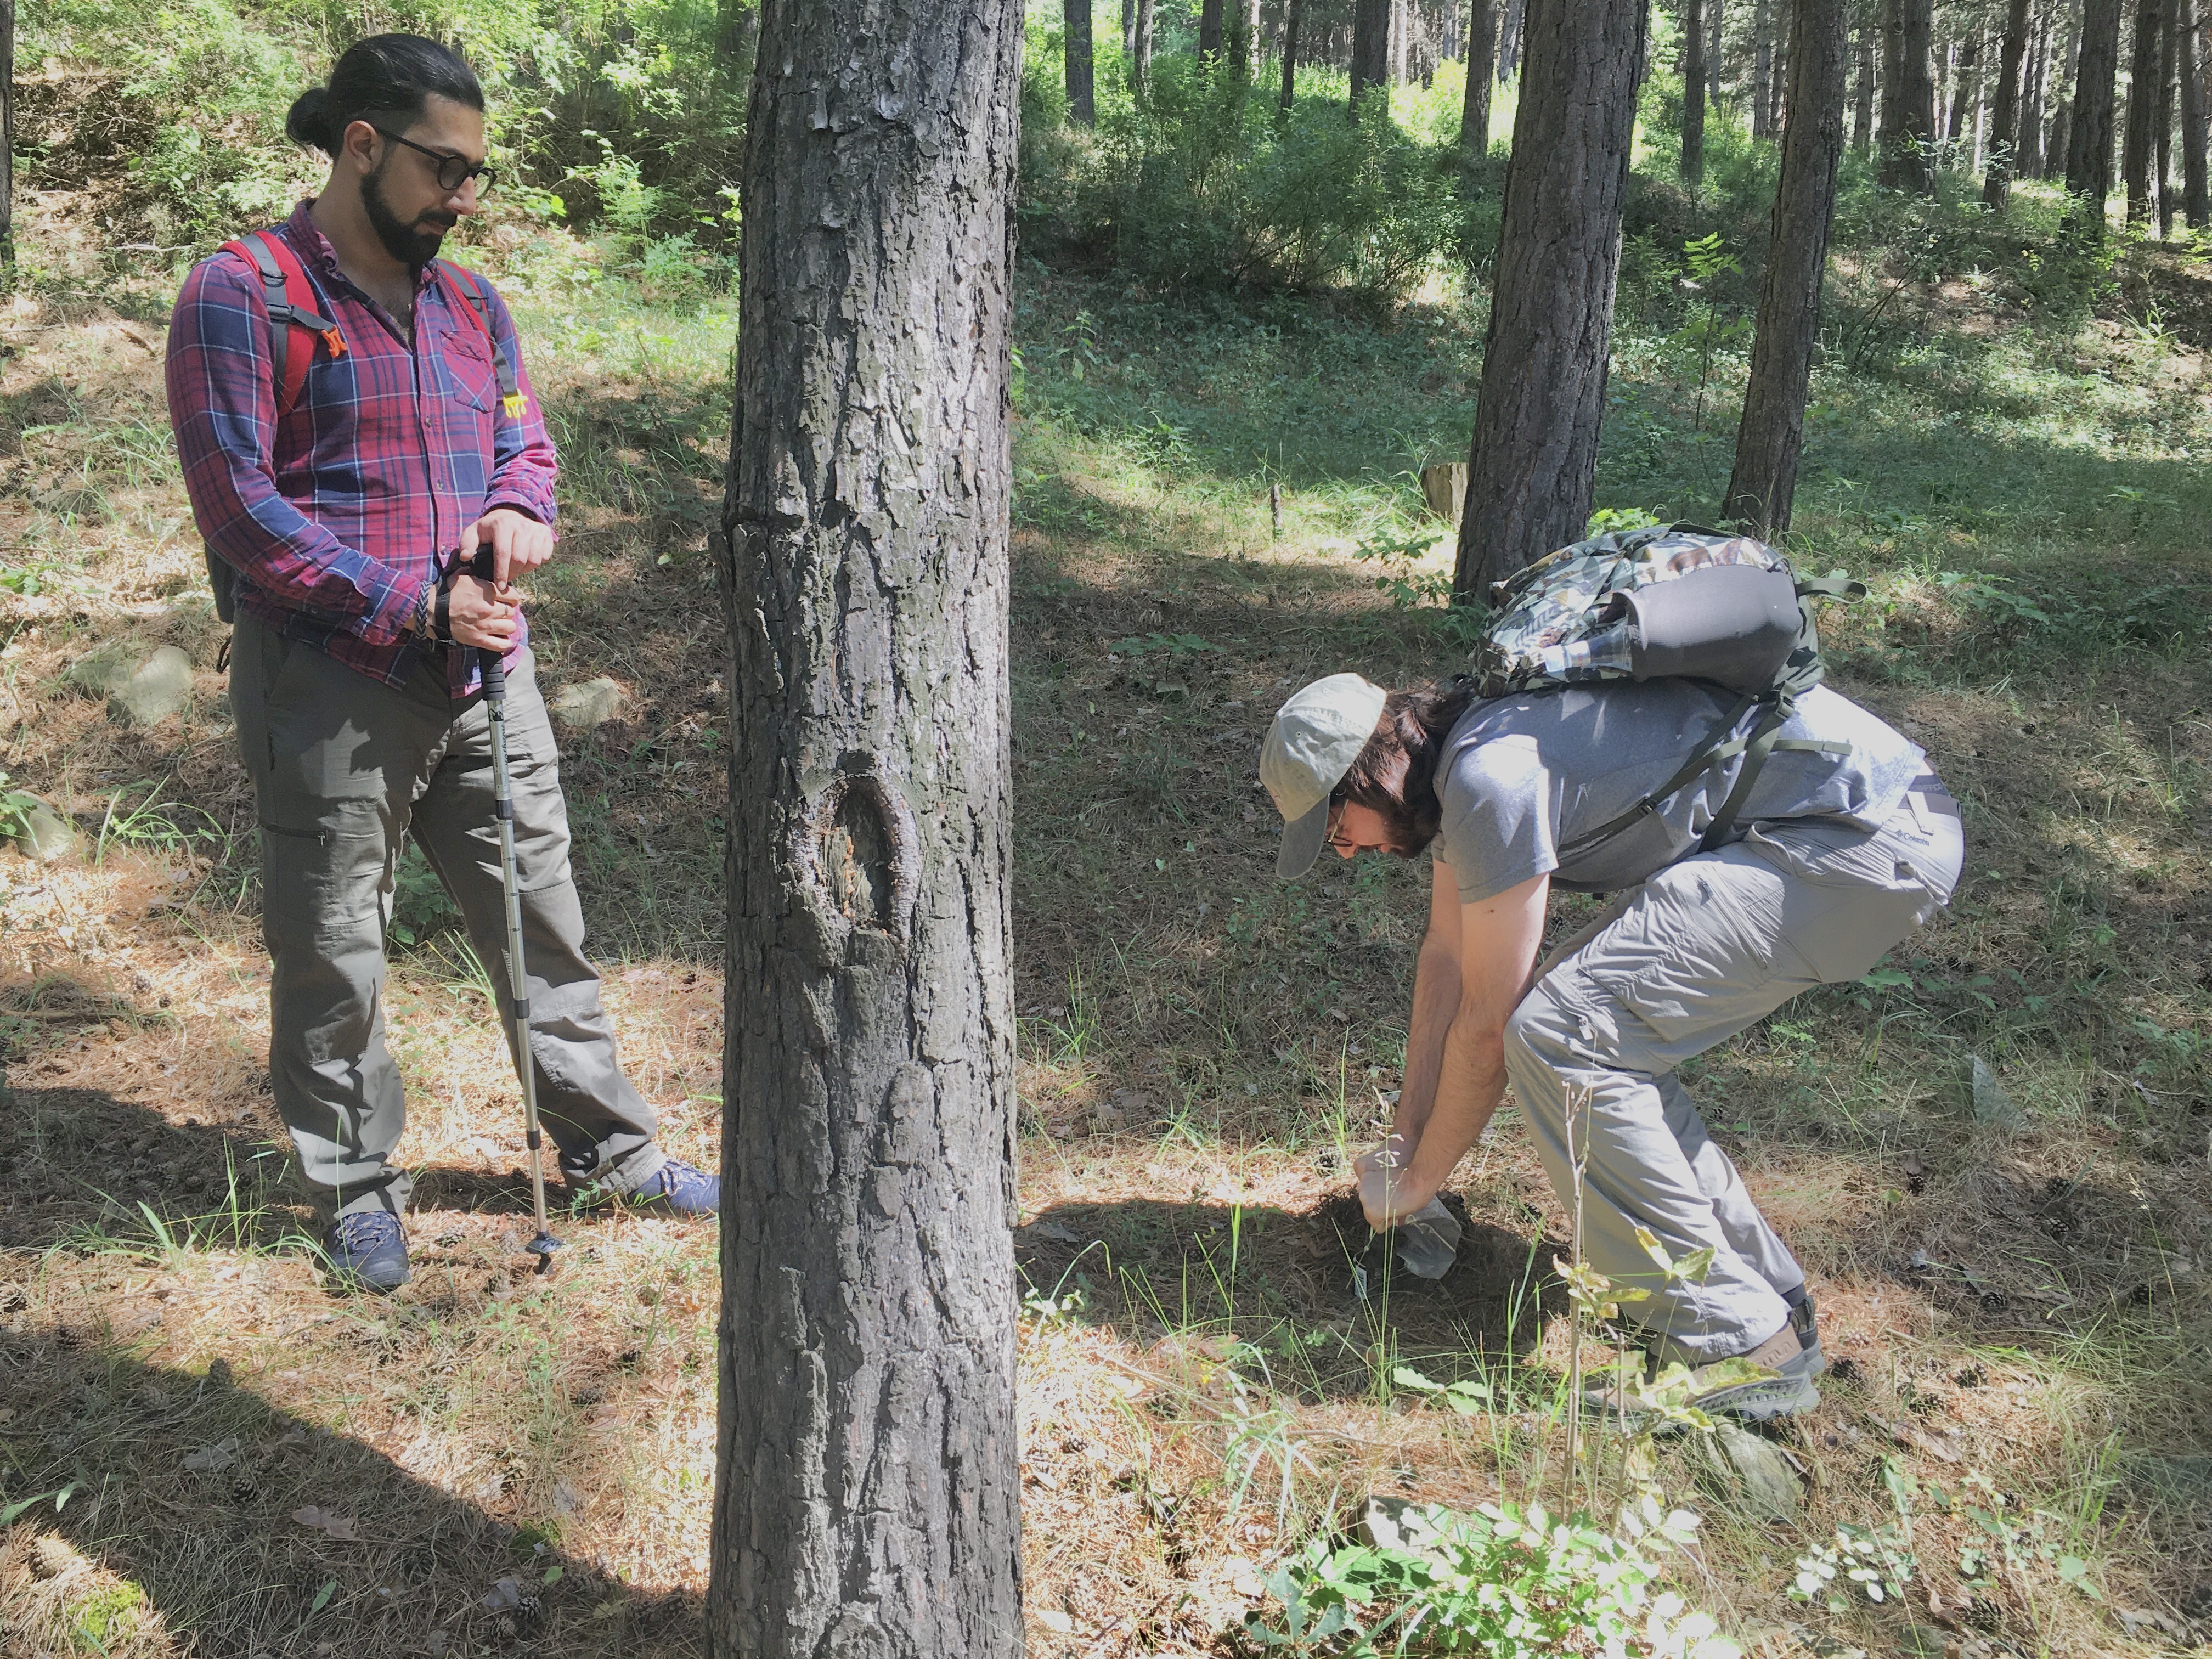 Razmig Sargsyan and Arik collect soil cores for high-throughput sequencing